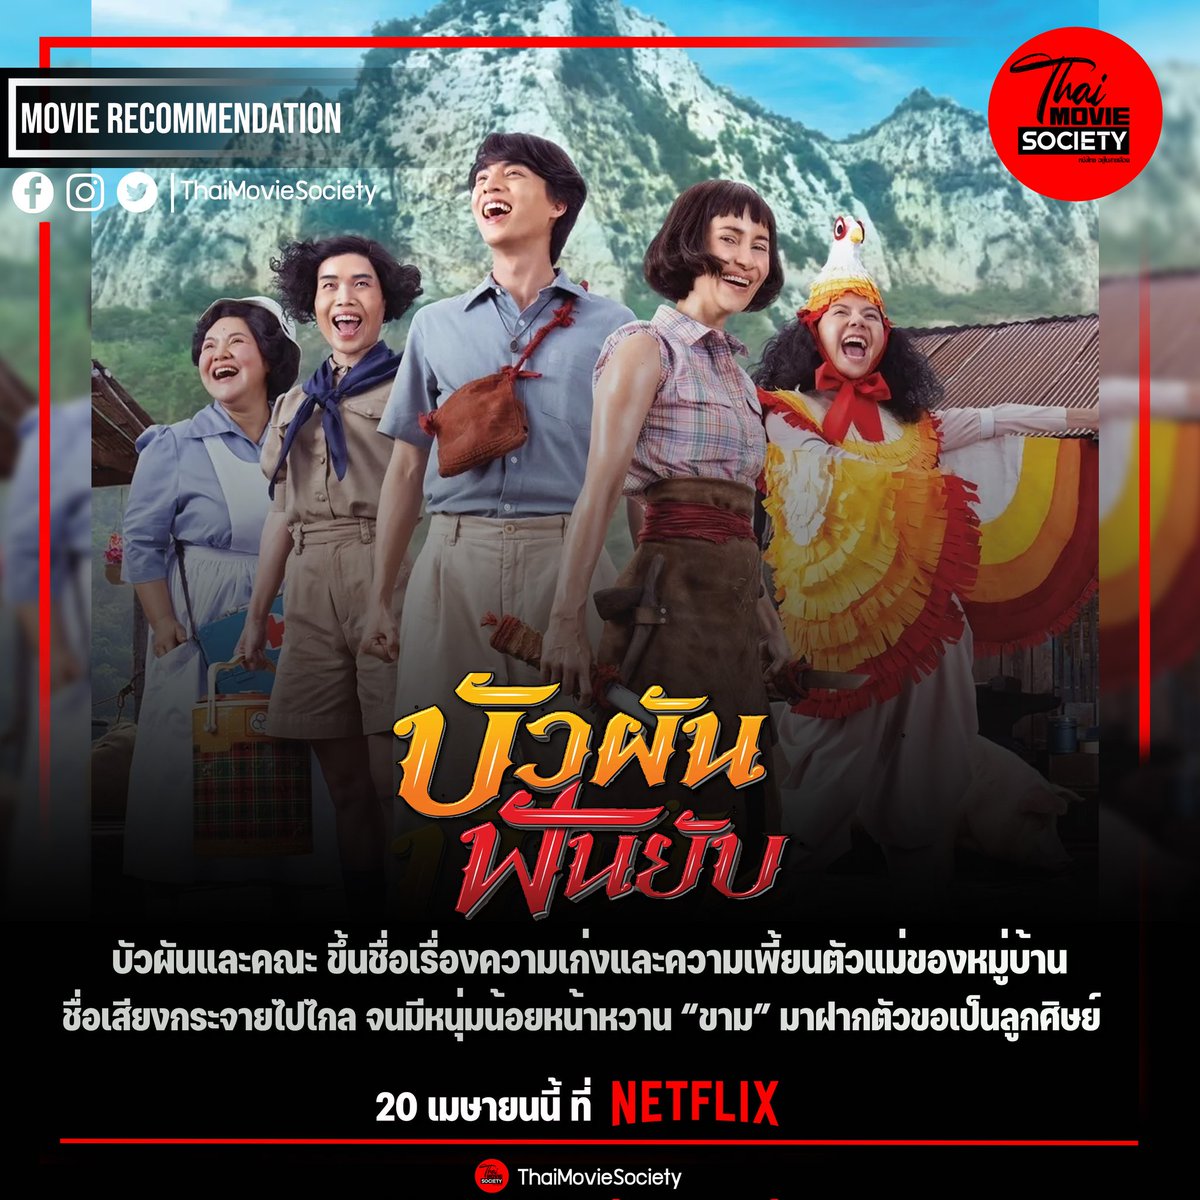 #บัวผันฟันยับ

ตัวอย่าง : youtu.be/yS4dbuZdVfI

20 เมษายนนี้ ที่ Netflix

จะเป็นอย่างไรเมื่อ 'บัวผัน' หัวหน้าแก๊งอันธพาลหญิงประจำหมู่บ้าน ต้องมาสอน'ขาม' ให้เป็นเป็นฮีโร่

#แอนทองประสม #กลัฟคณาวุฒิ #thaimoviesociety #รฤกโปรดั๊กชั่น  #GulfKanawut #ลูกบอลของคุณบิ๊กกลัฟ #PhiBalls